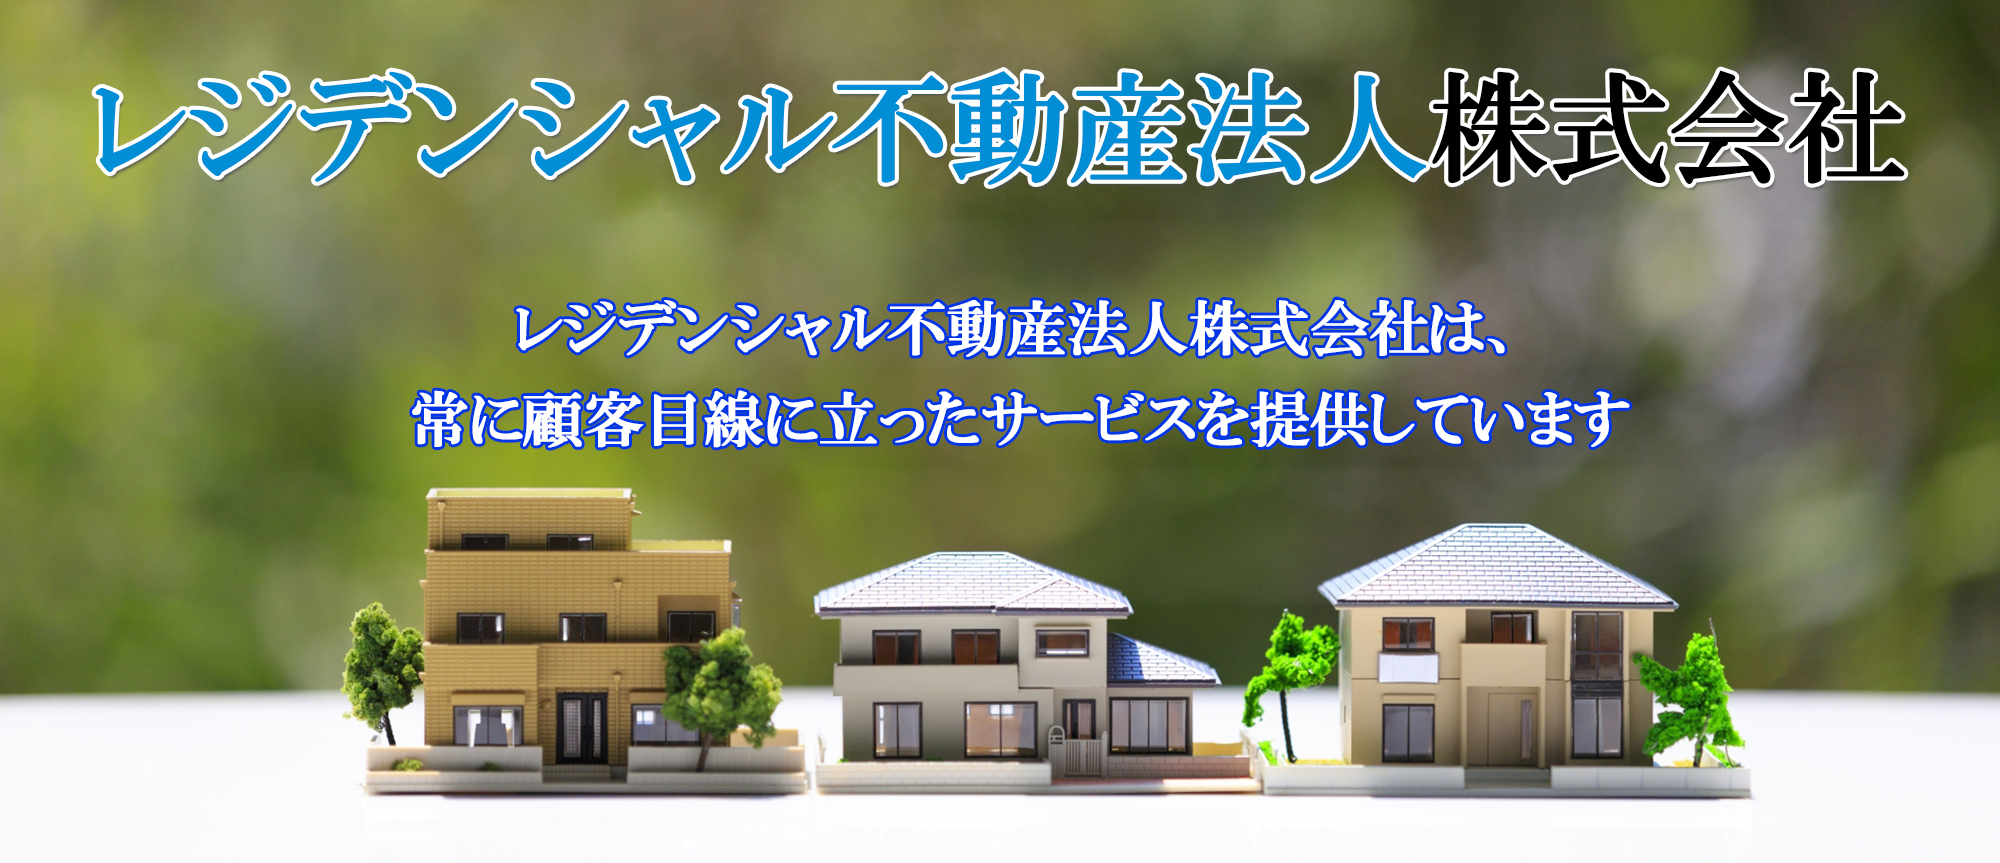 レジデンシャル不動産法人株式会社は、関東を中心に住宅の売買を行っている不動産会社です。